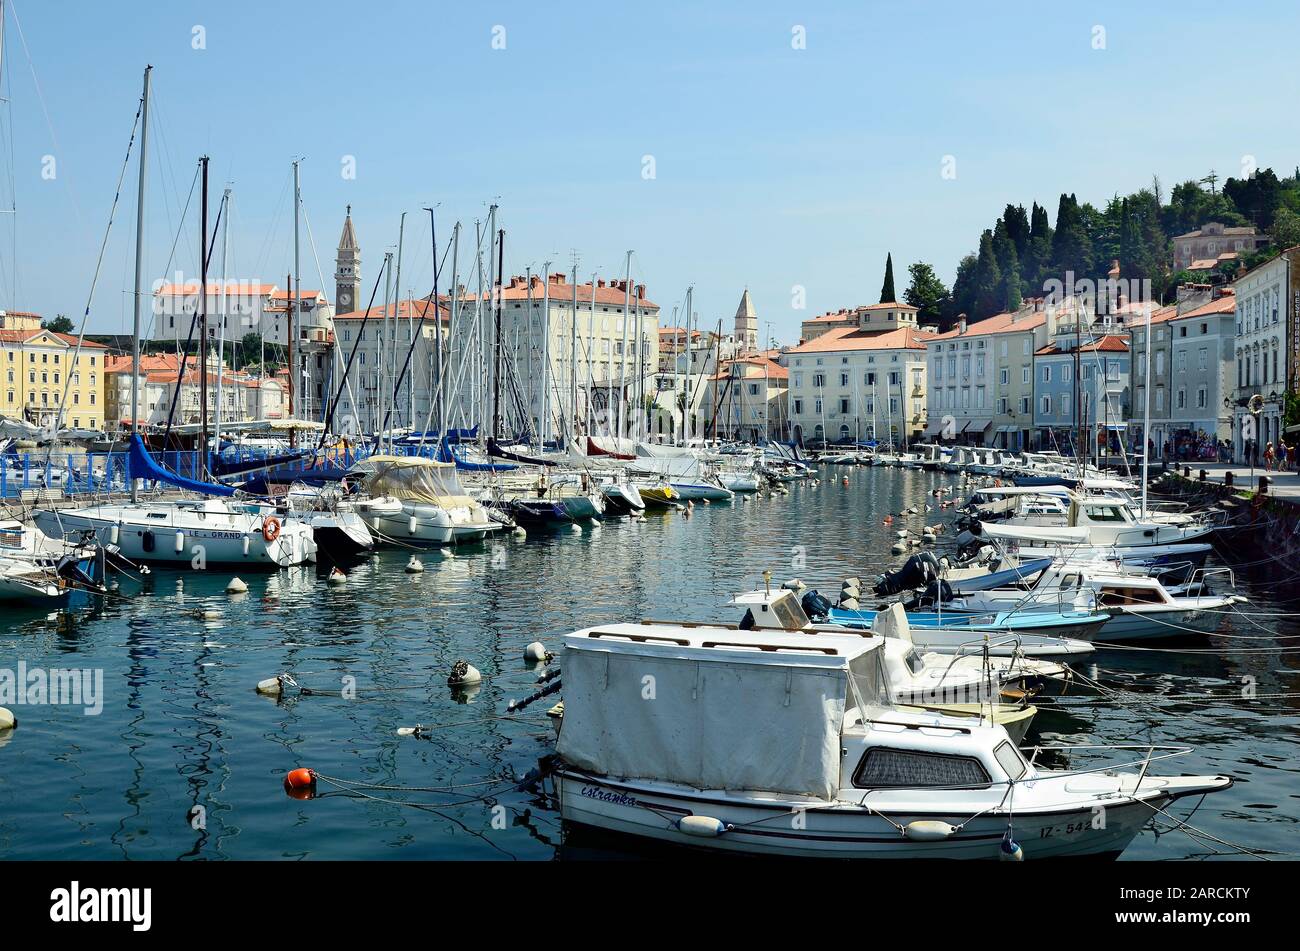 Piran, Slovénie - 4 juillet 2015 : personnes non identifiées, port, bateaux, bâtiments et campanile dans le village pittoresque de la mer Adriatique Banque D'Images